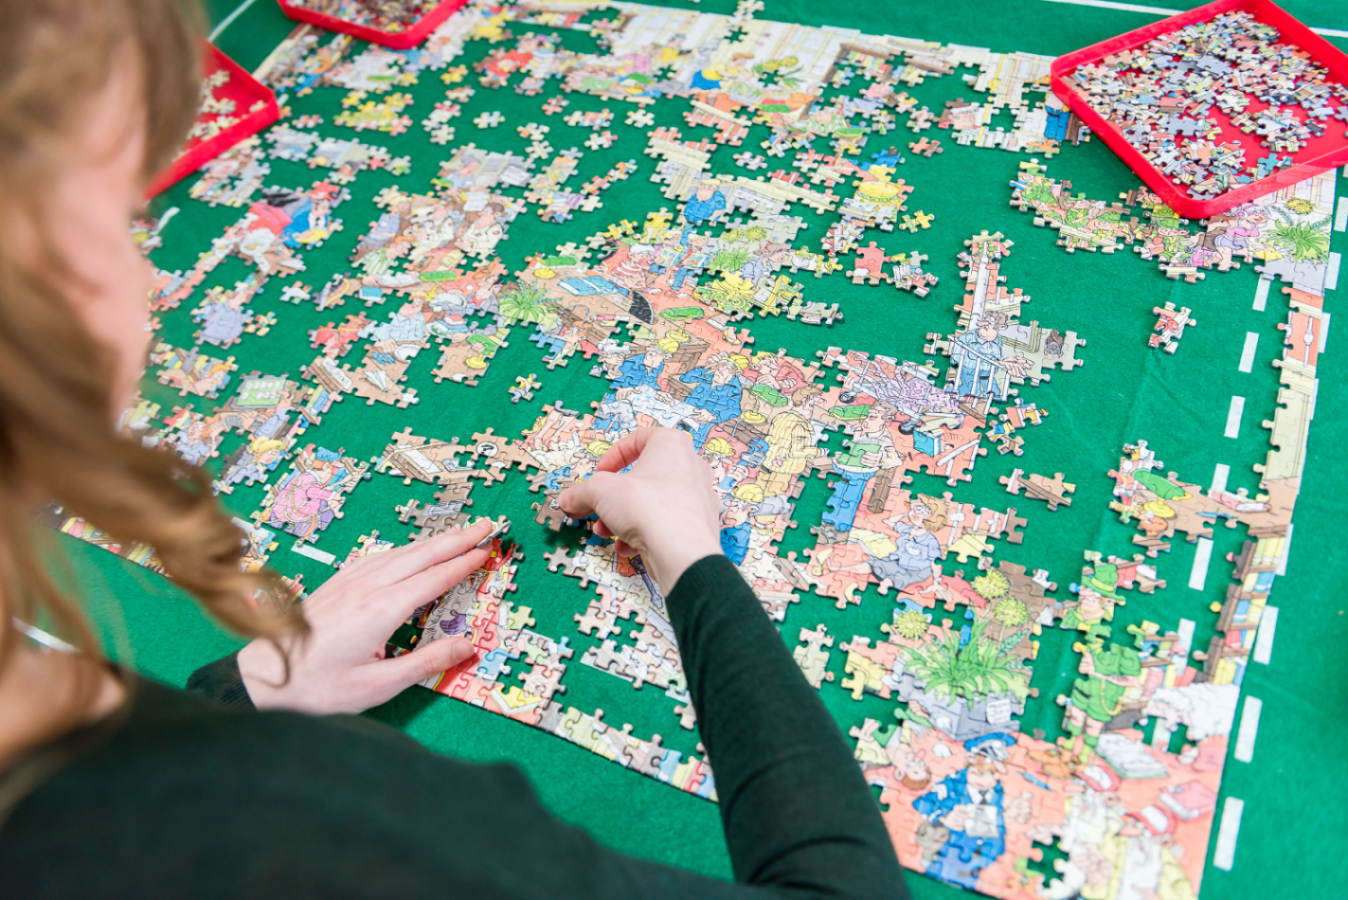 Jumbo tapis de puzzle Puzzle & Roll 1500, Commandez facilement en ligne